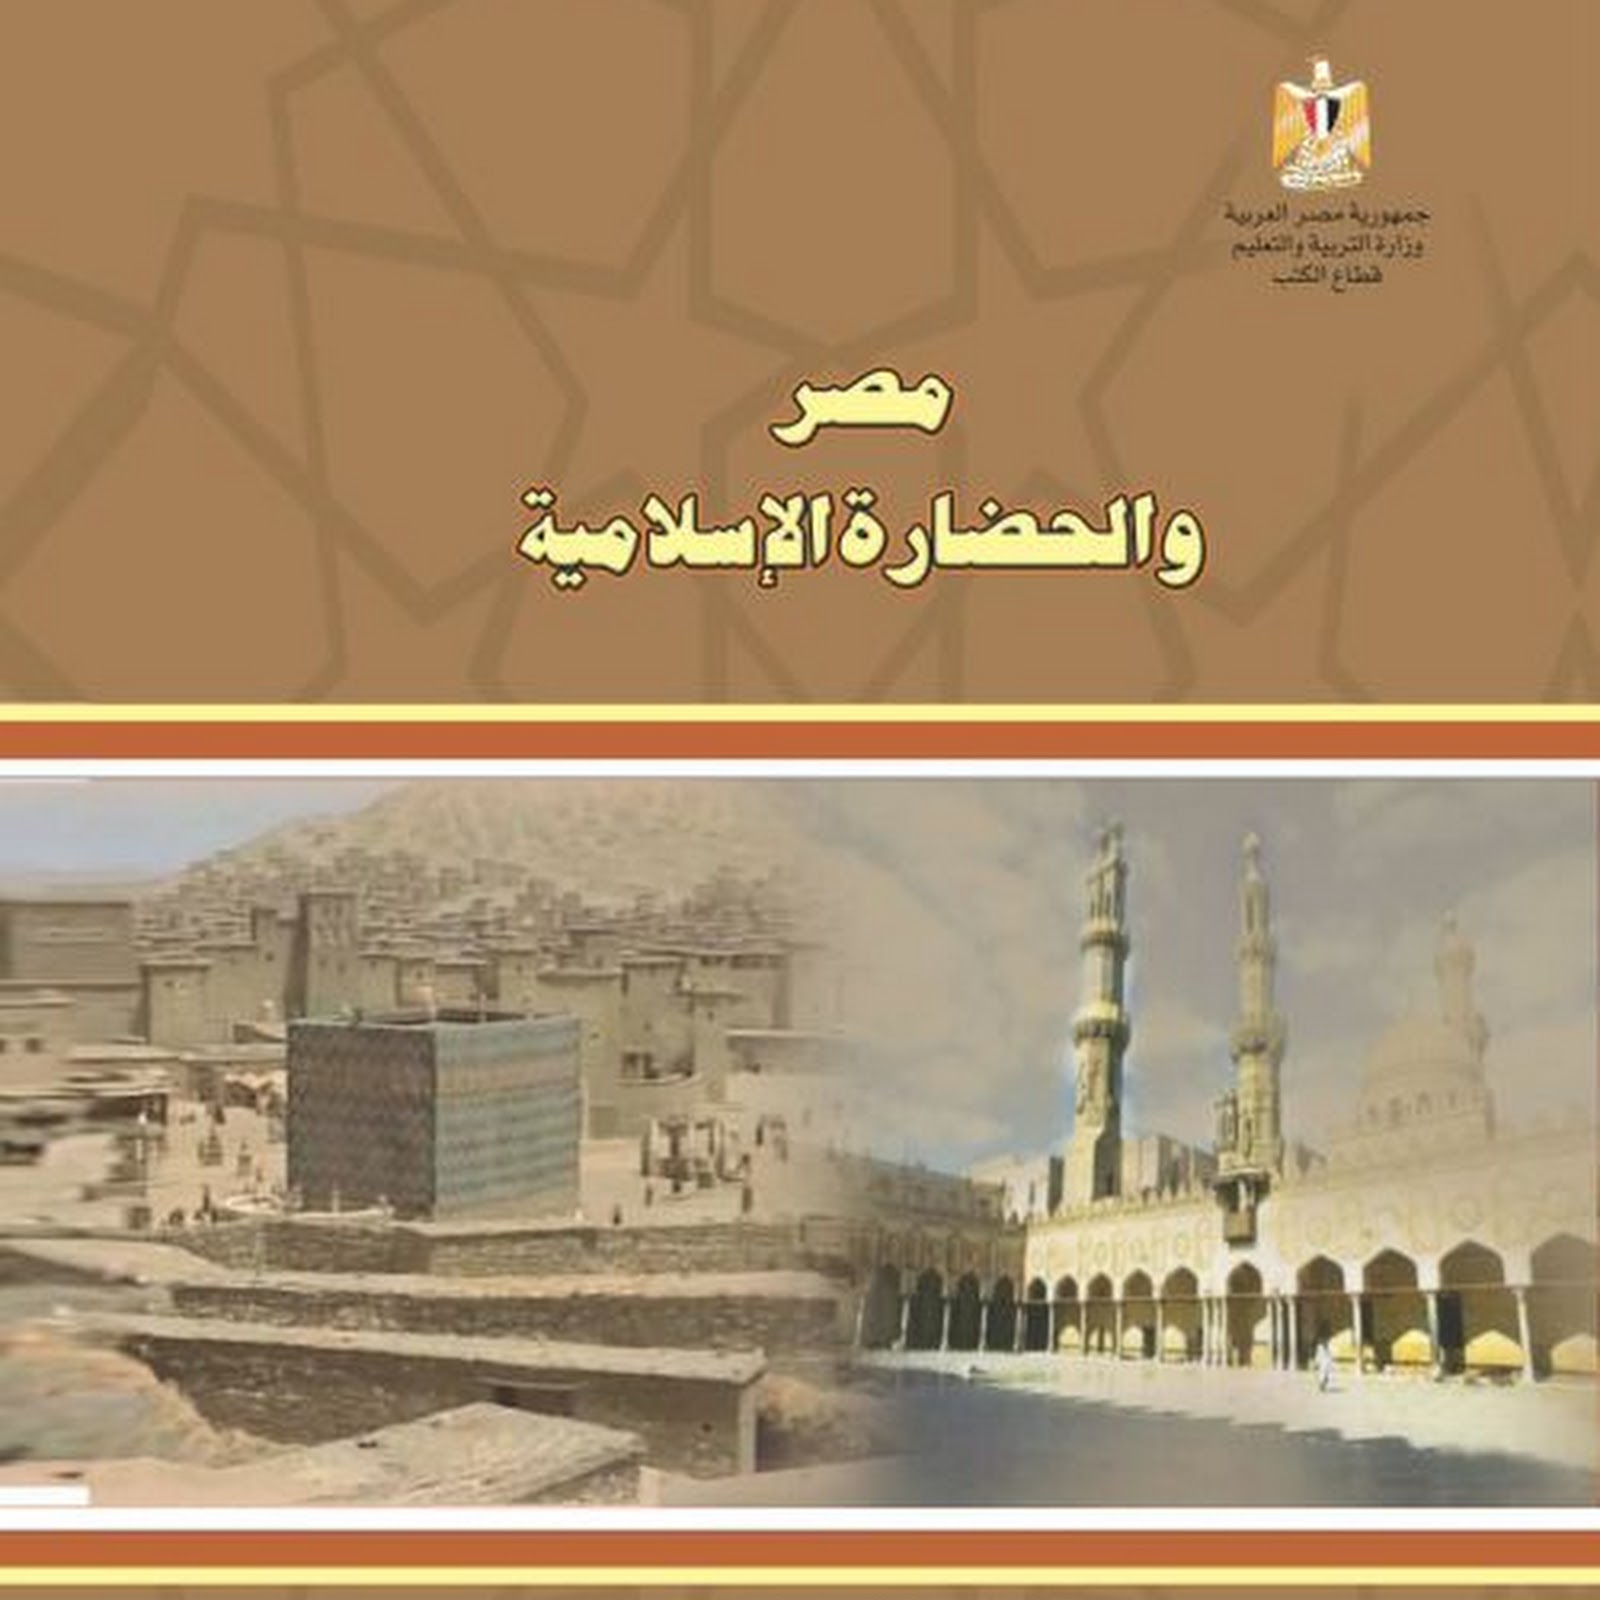 كتاب التاريخ للصف الثاني الثانوي 2016 مكتبة سور الازبكية